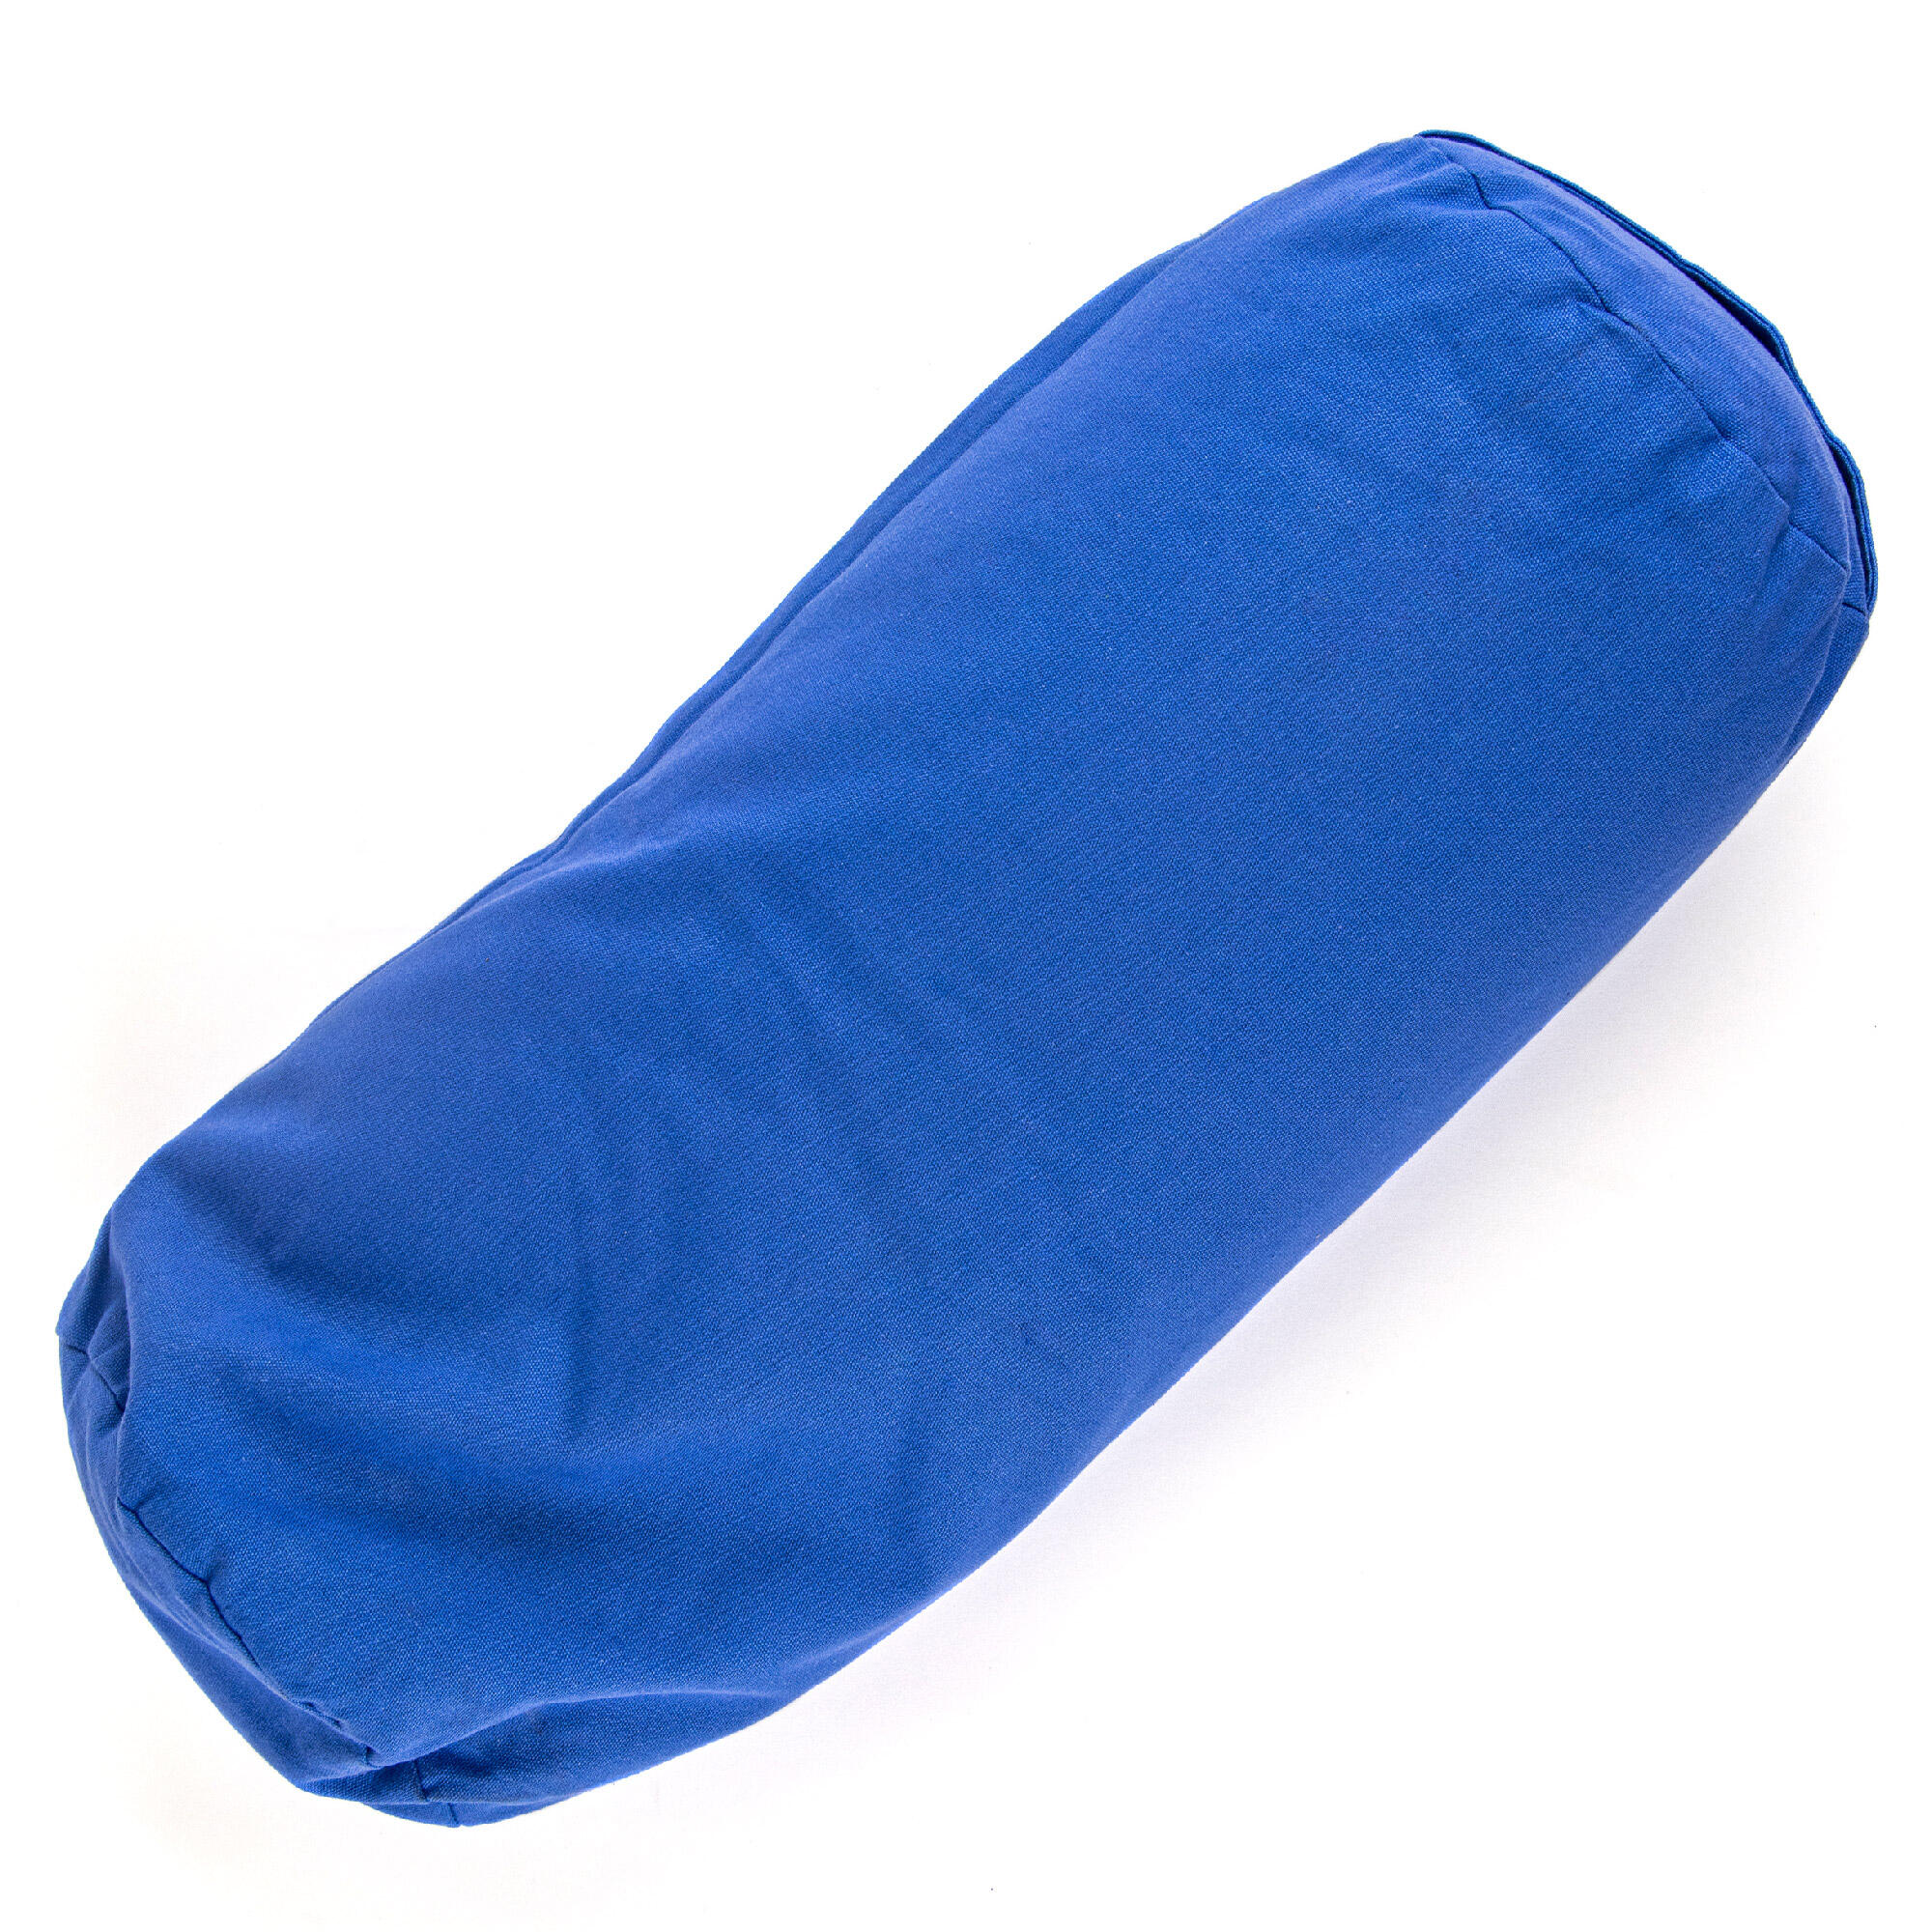 Support Bolster Pillow - Blue 1/7